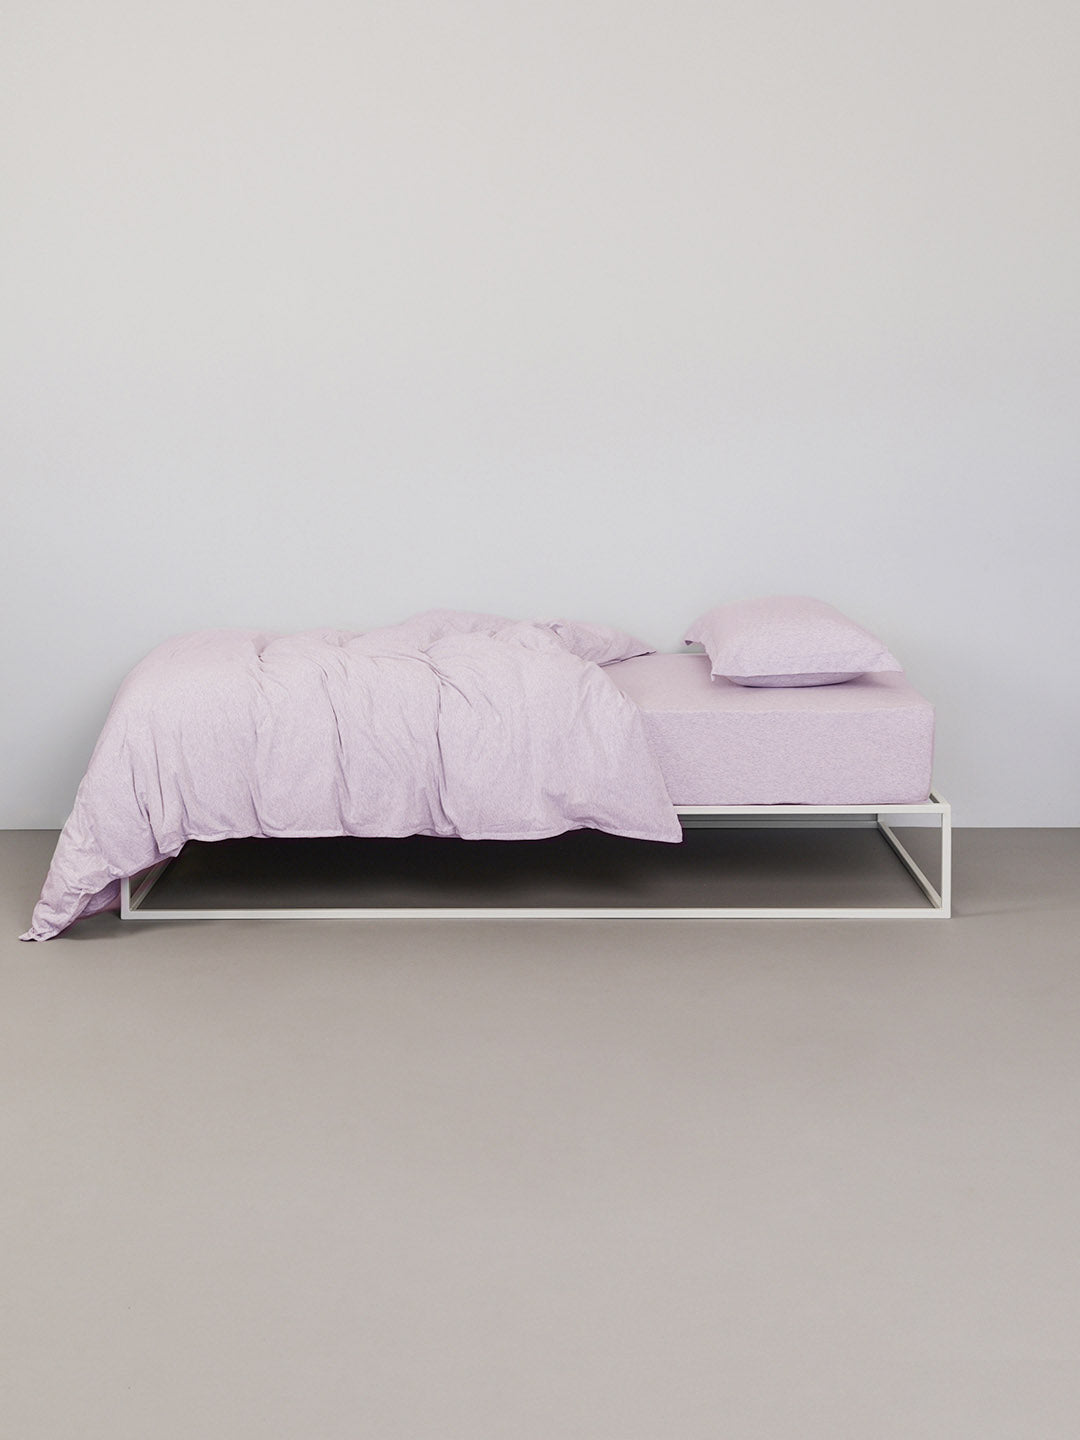 מיטת ברזל לבנה עם סט מצעים איכותי הכולל ציפה וציפיות בצבע סגול מלאנג'